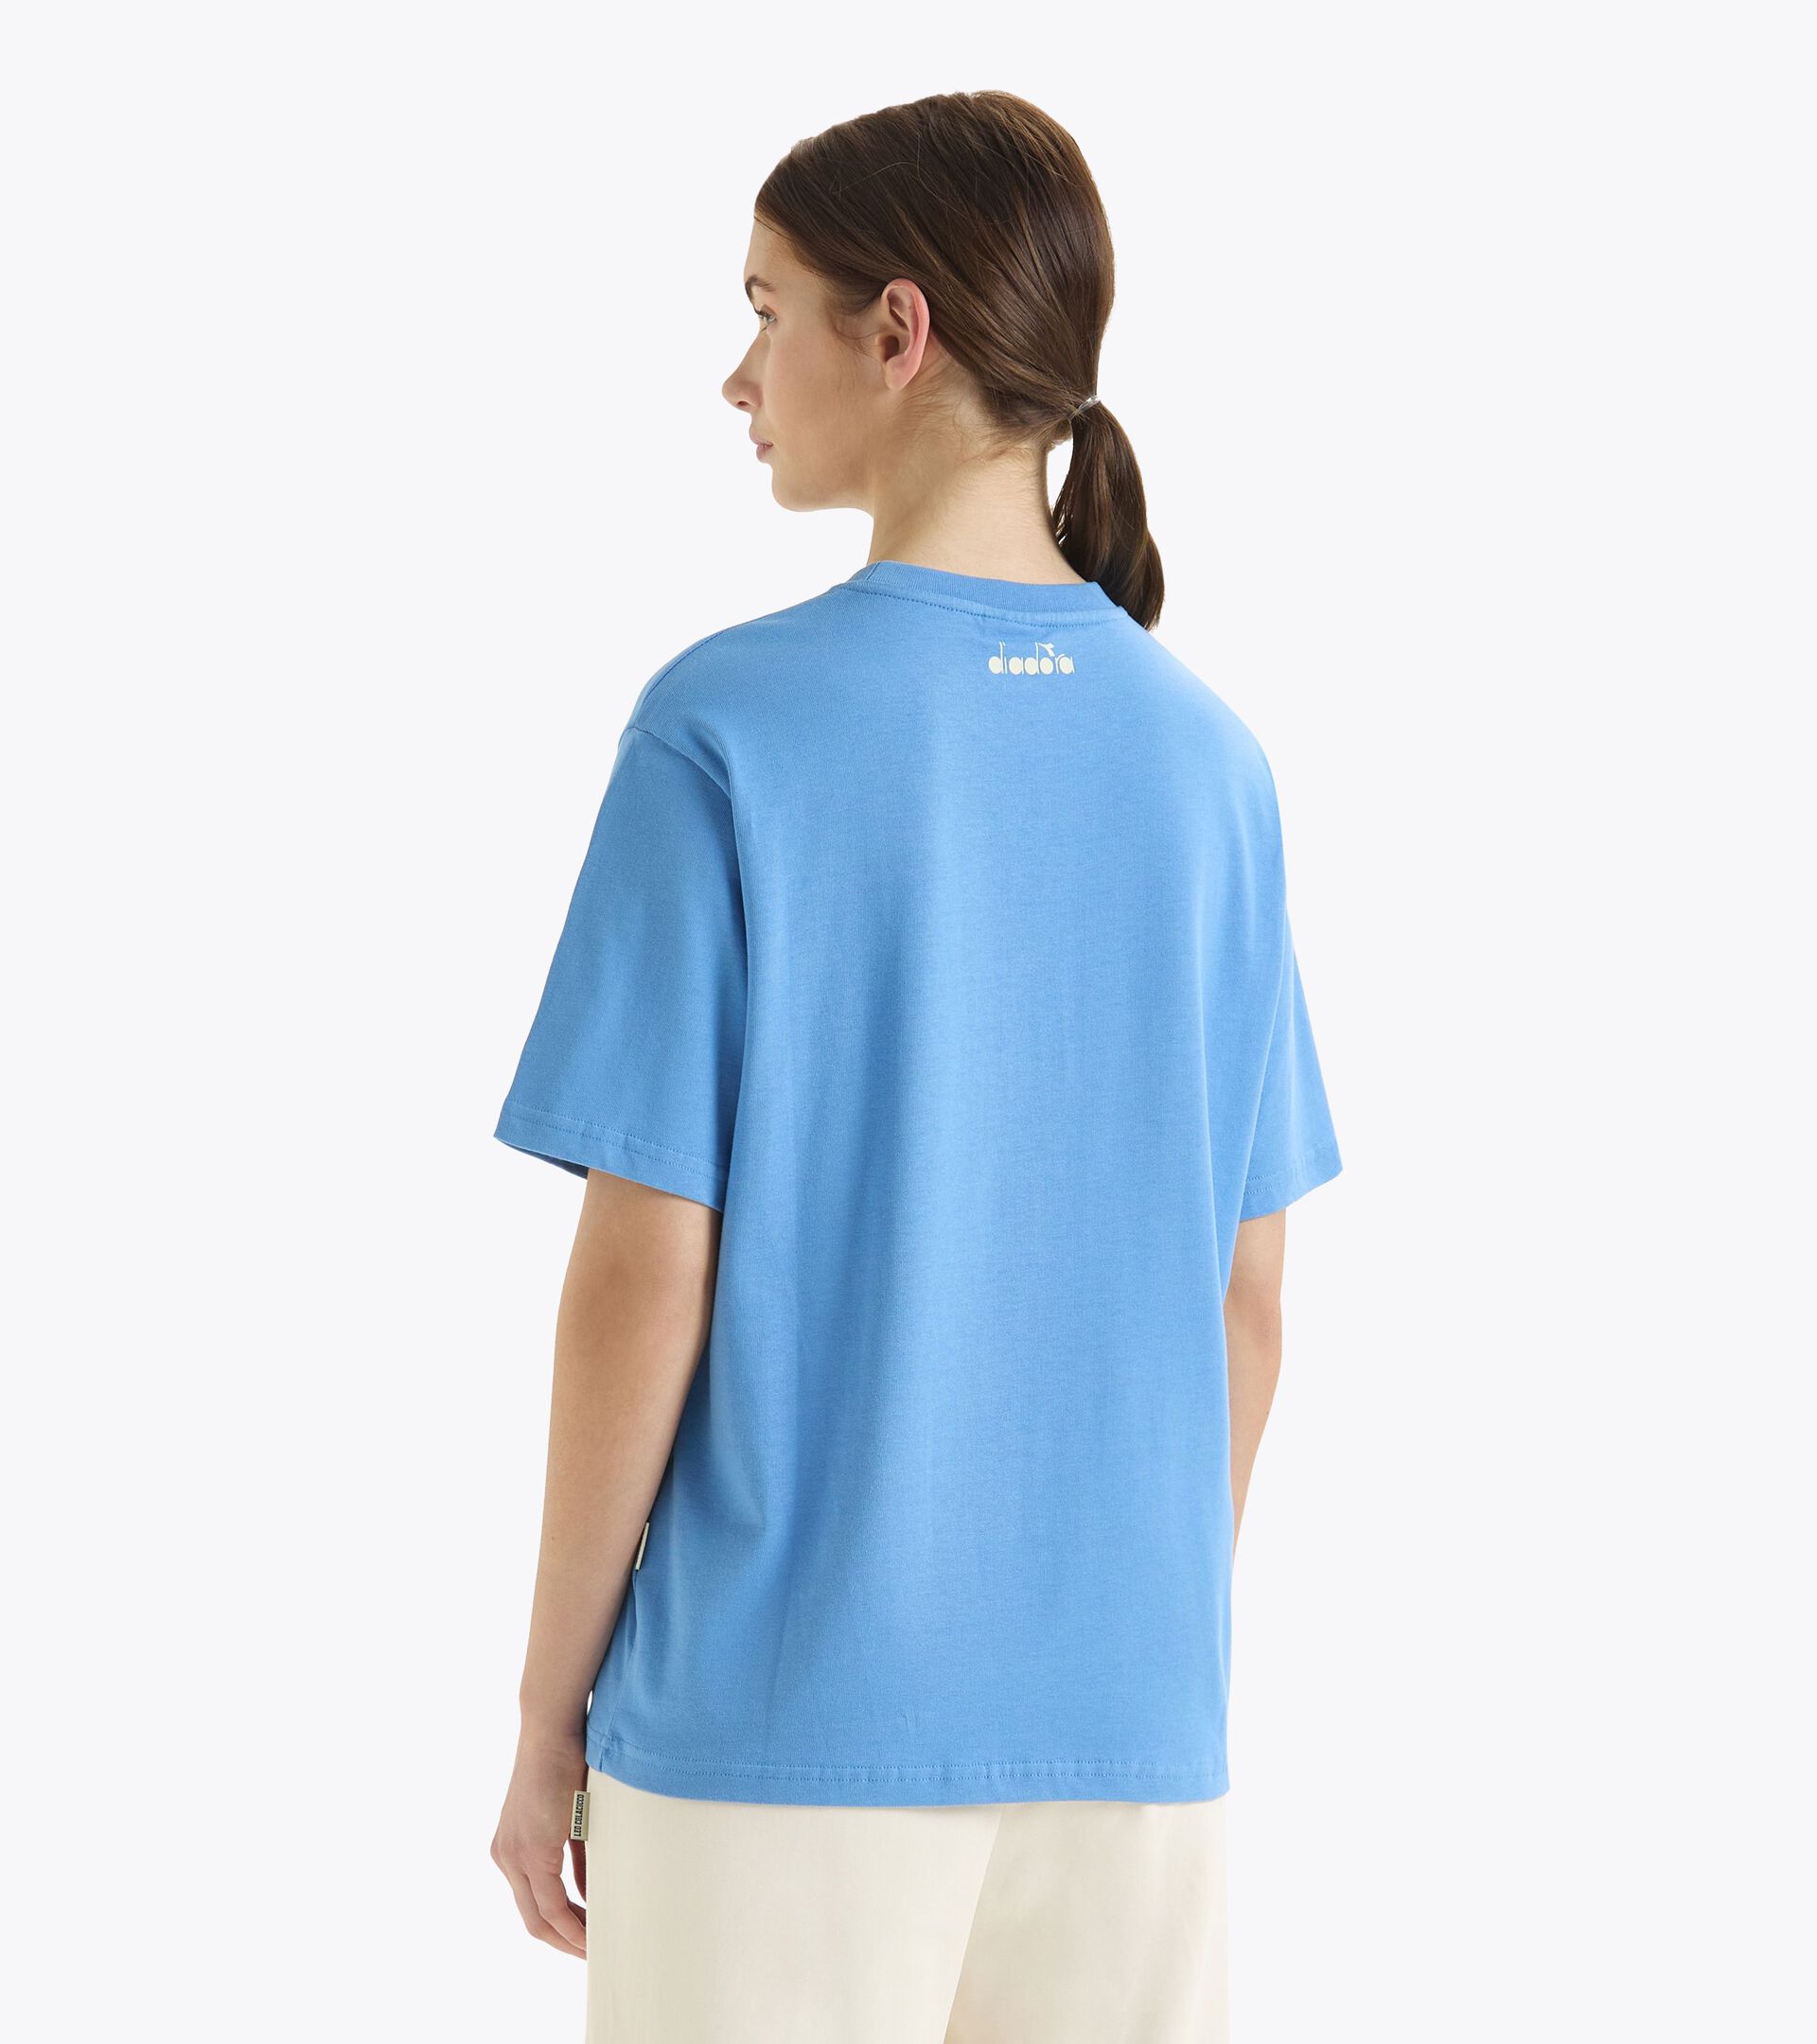 T-shirt - Gender Neutral T-SHIRT SS G.D. 1984 (226) PACIFIC COAST - Diadora